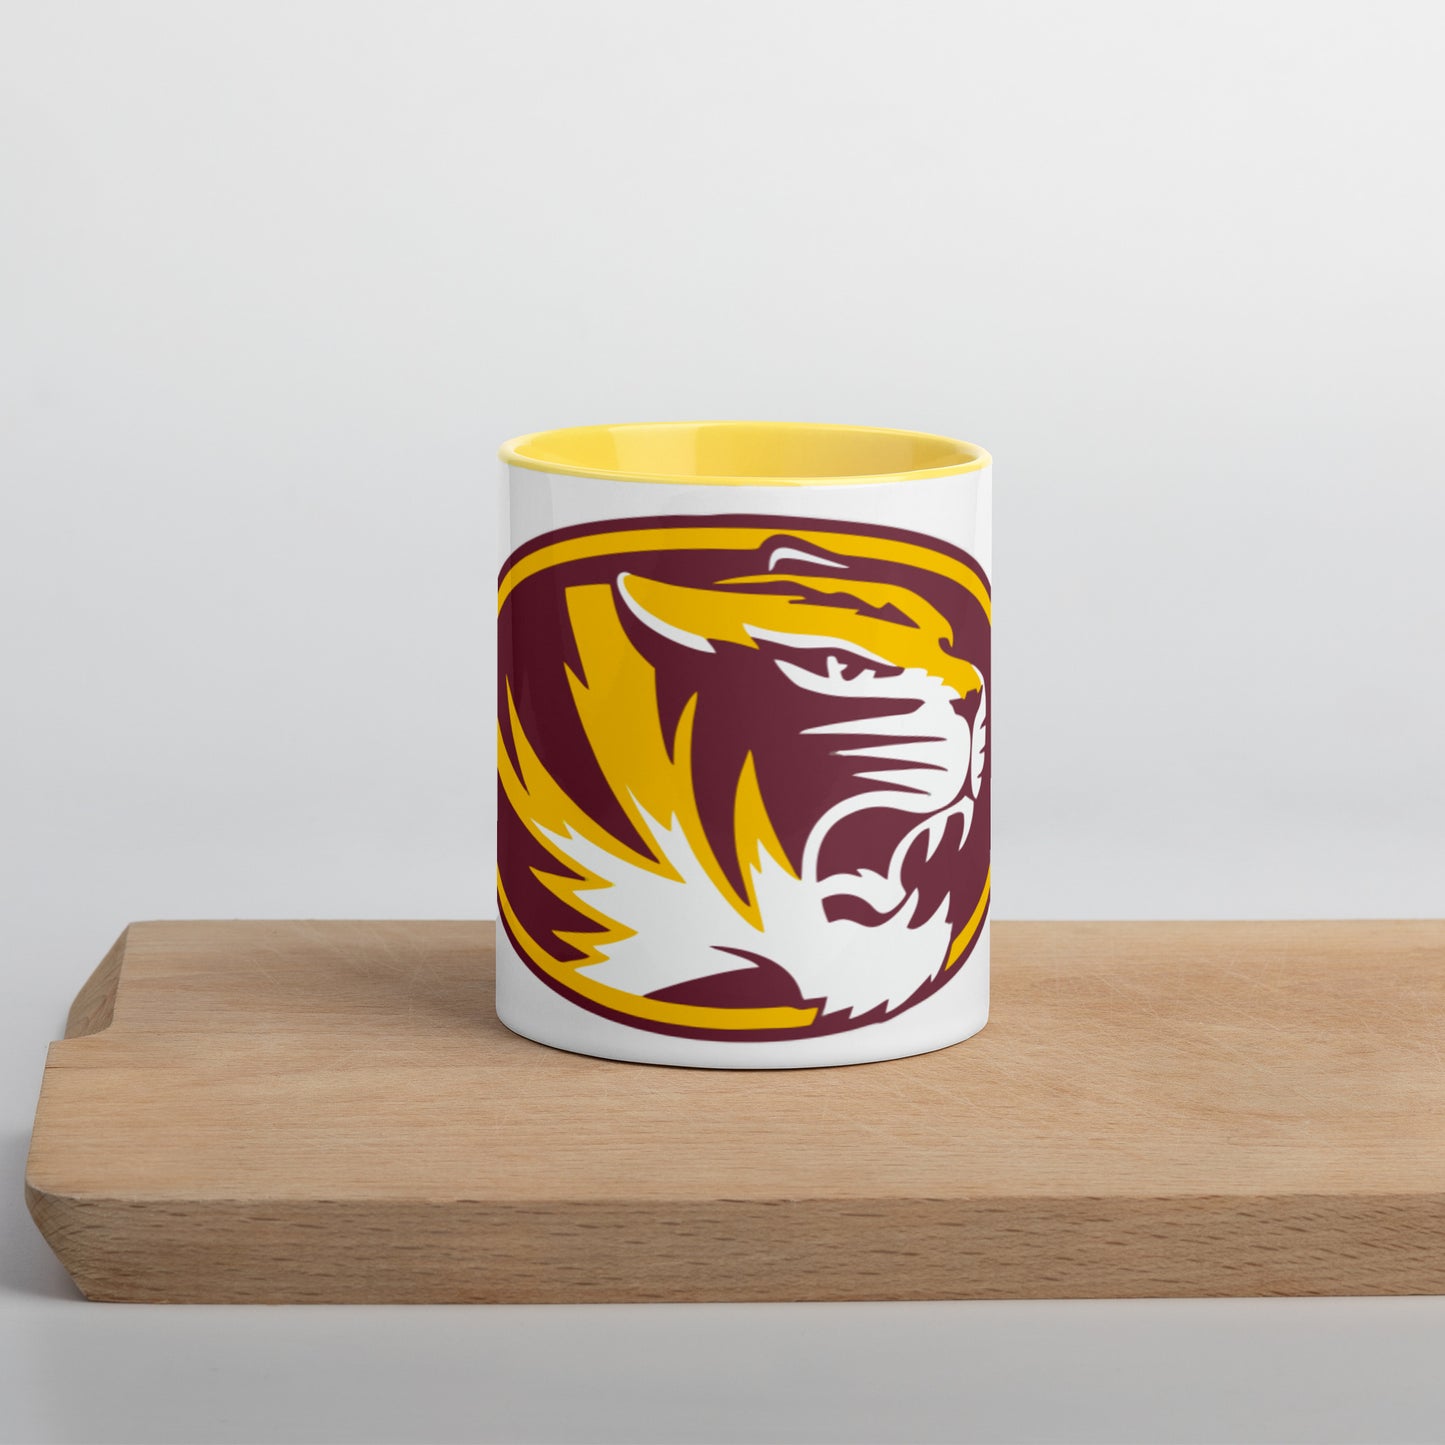 Alex Tigers Mug with Color Inside